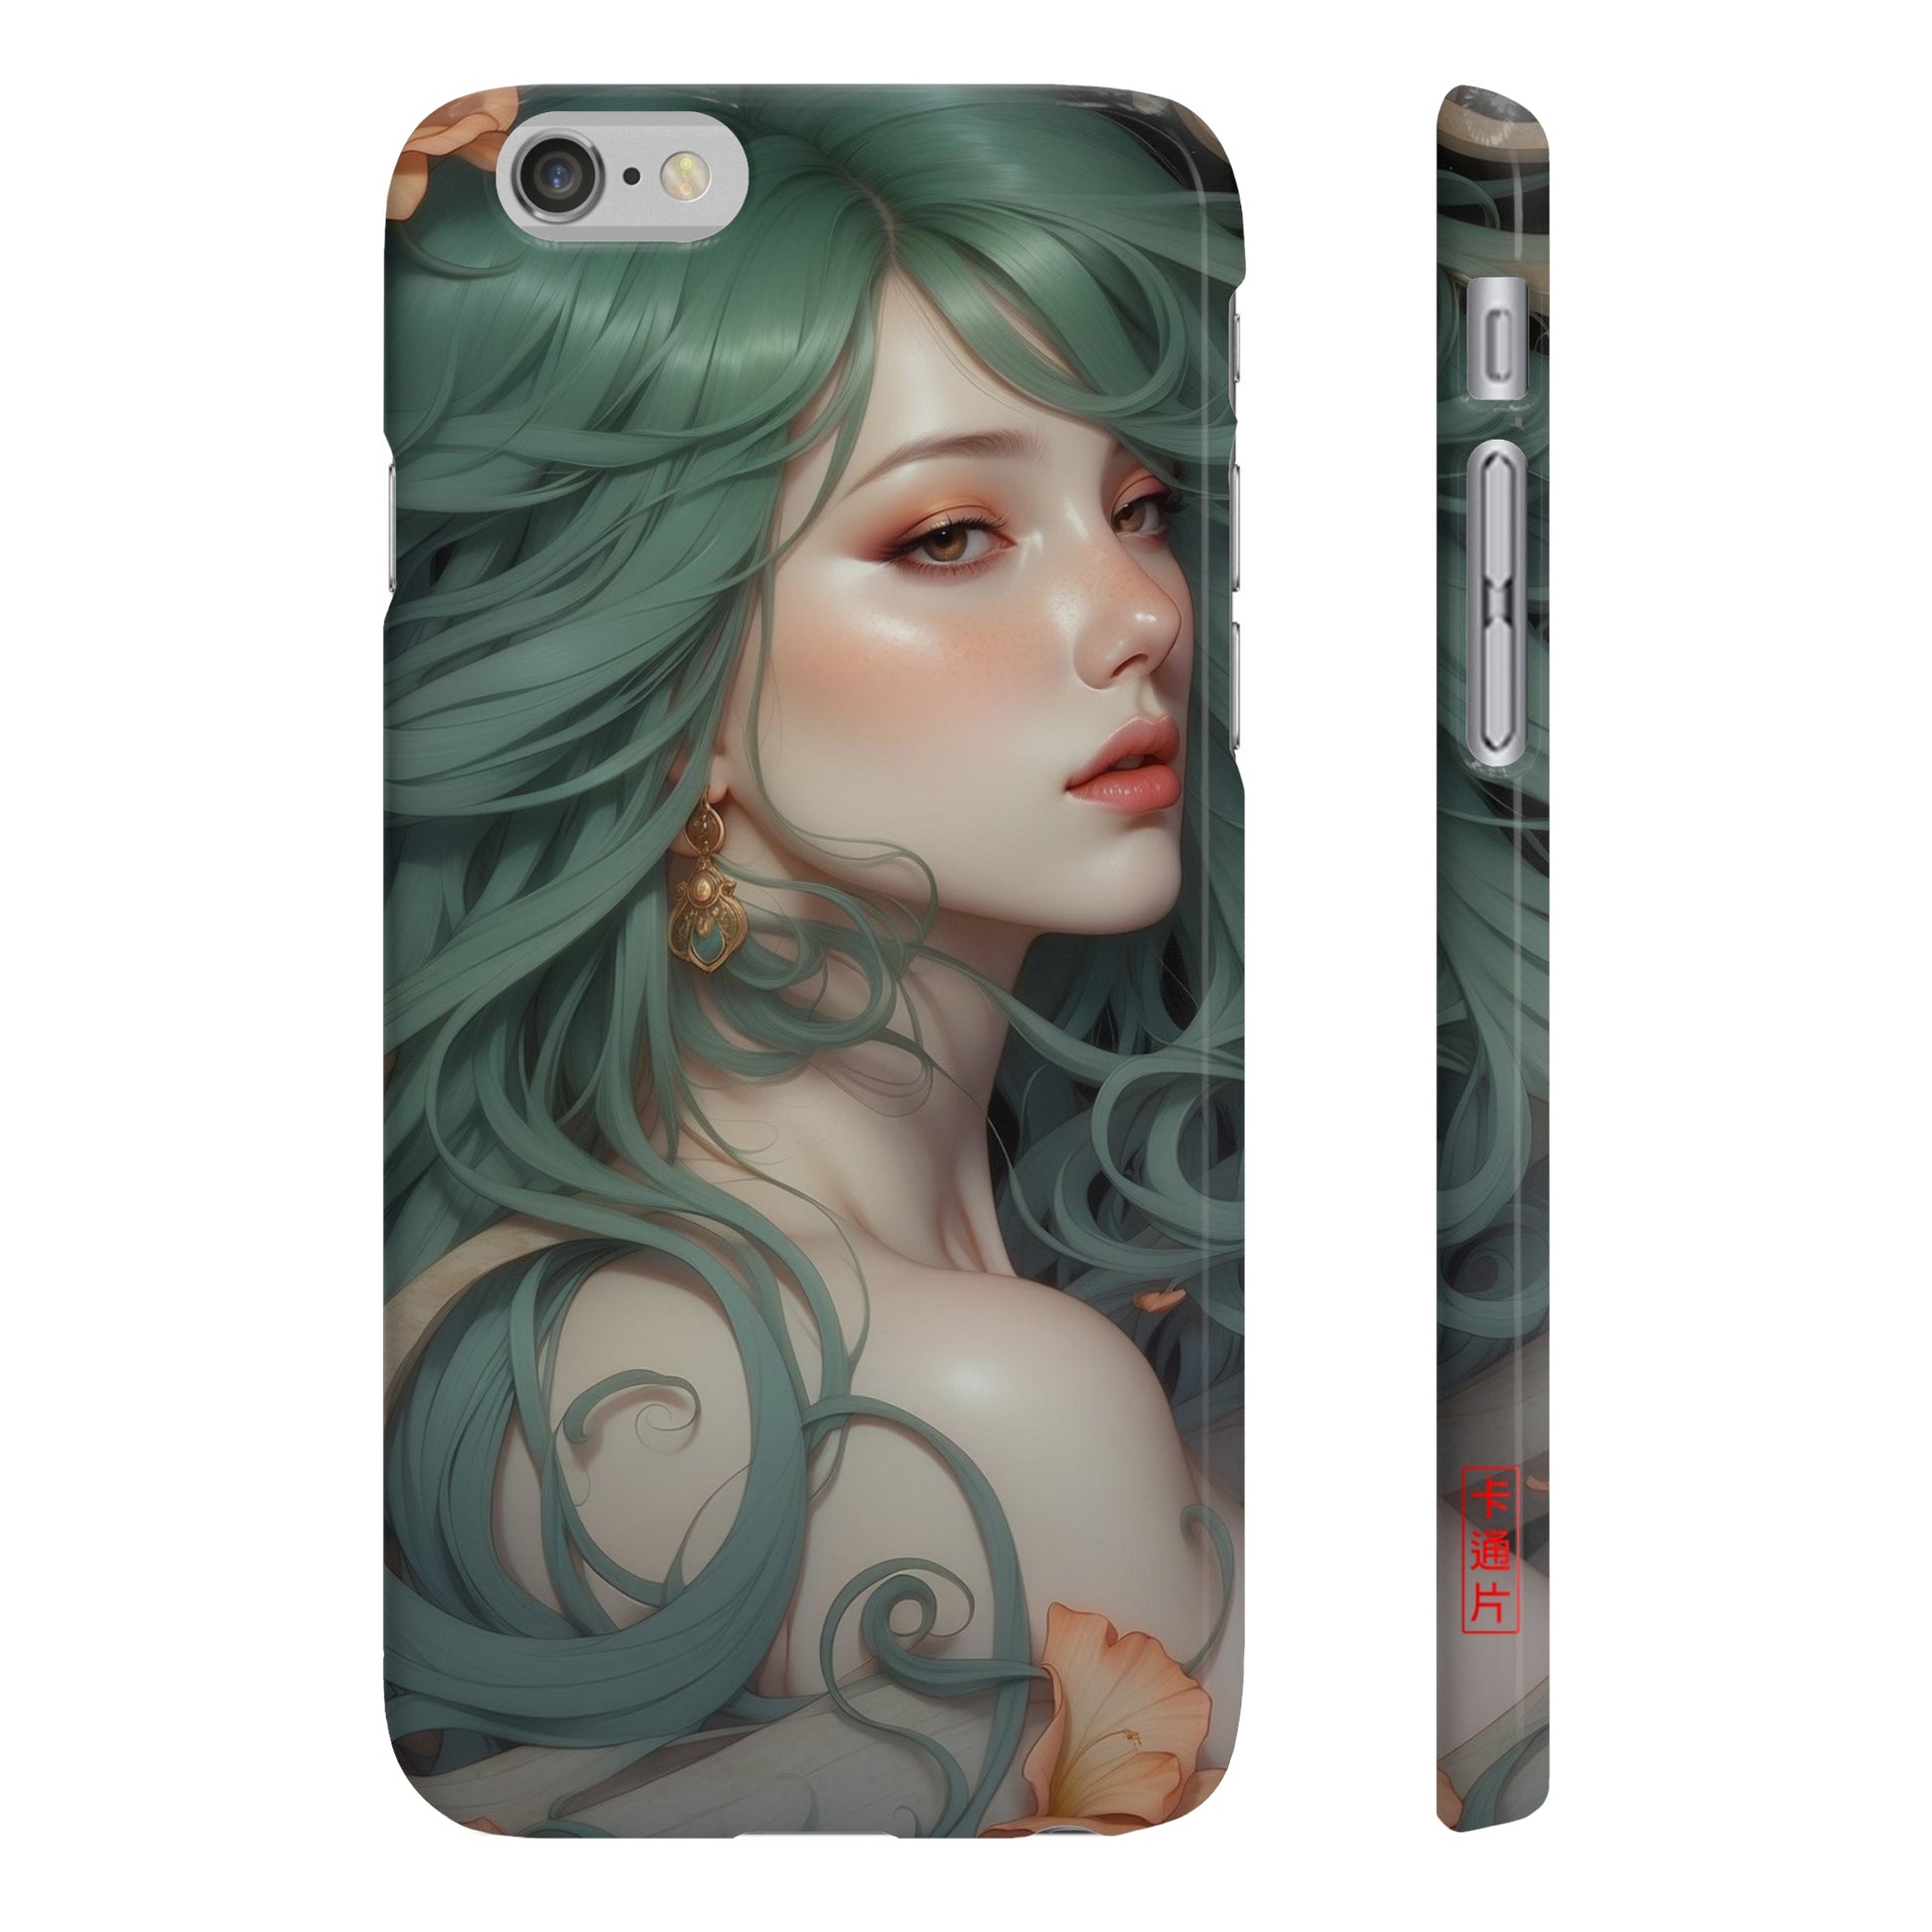 Kǎtōng Piàn - Mermaid Collection - 027 - Slim Phone Cases Printify